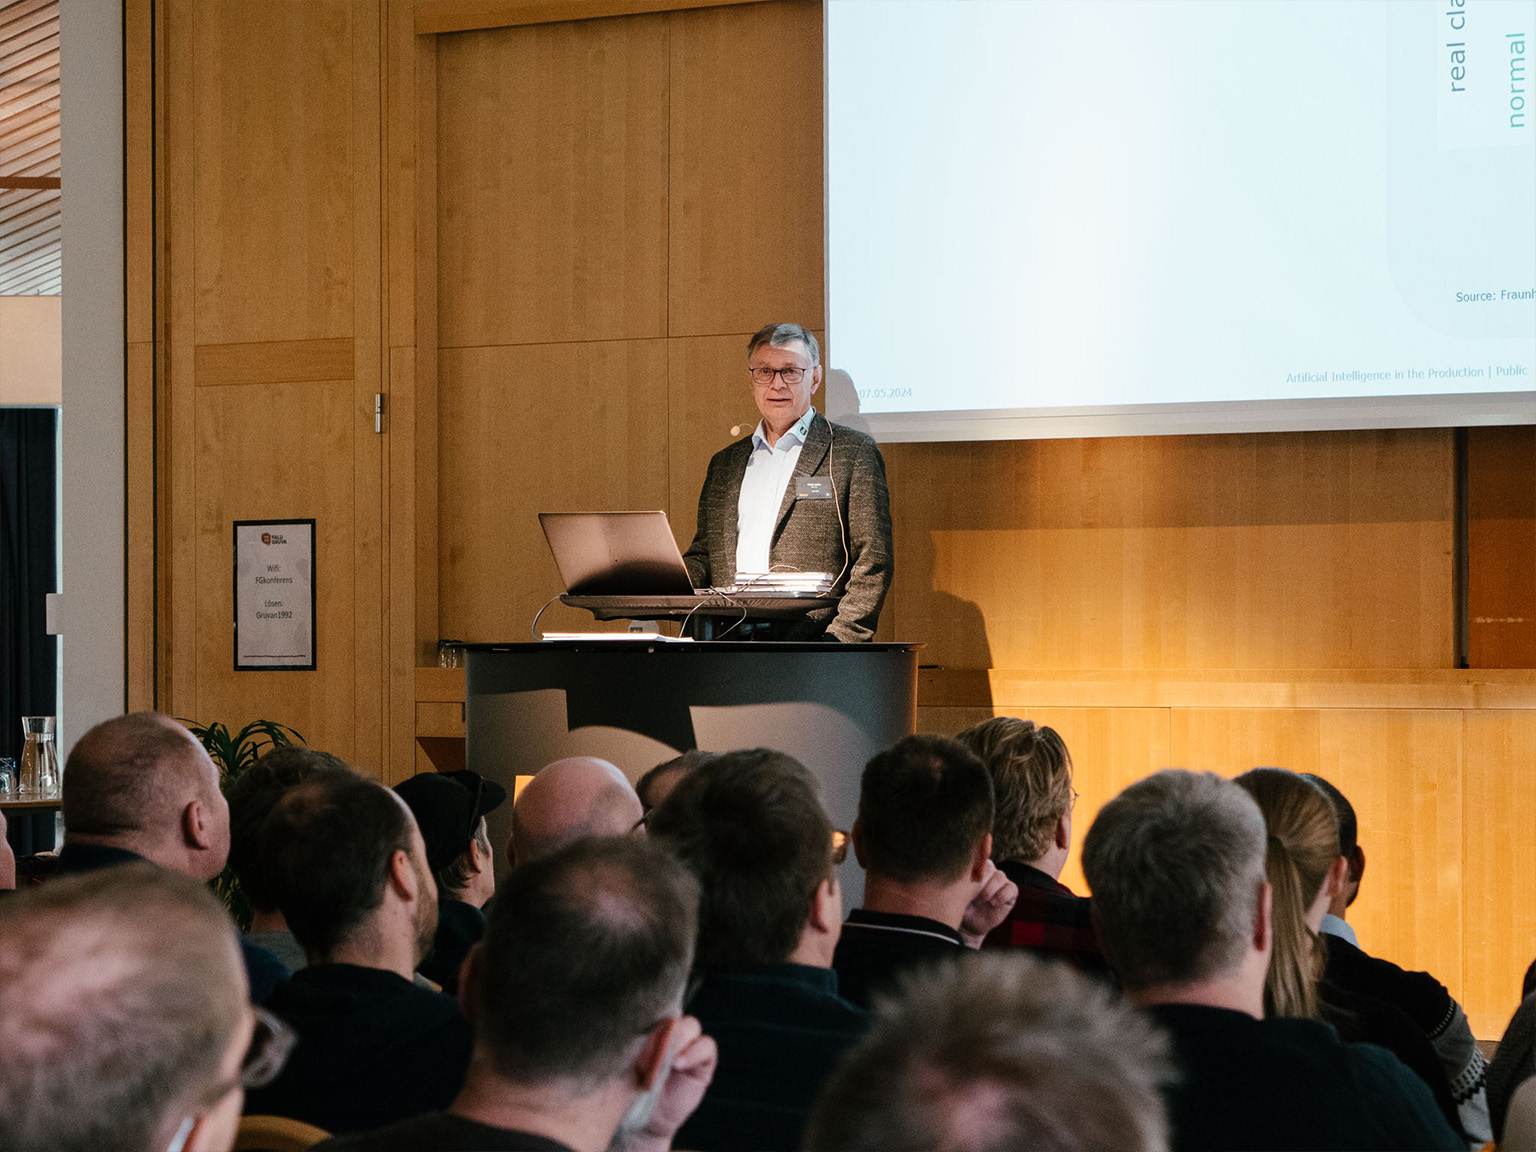 Keynote Speech by Dr. Ulrich Lettau